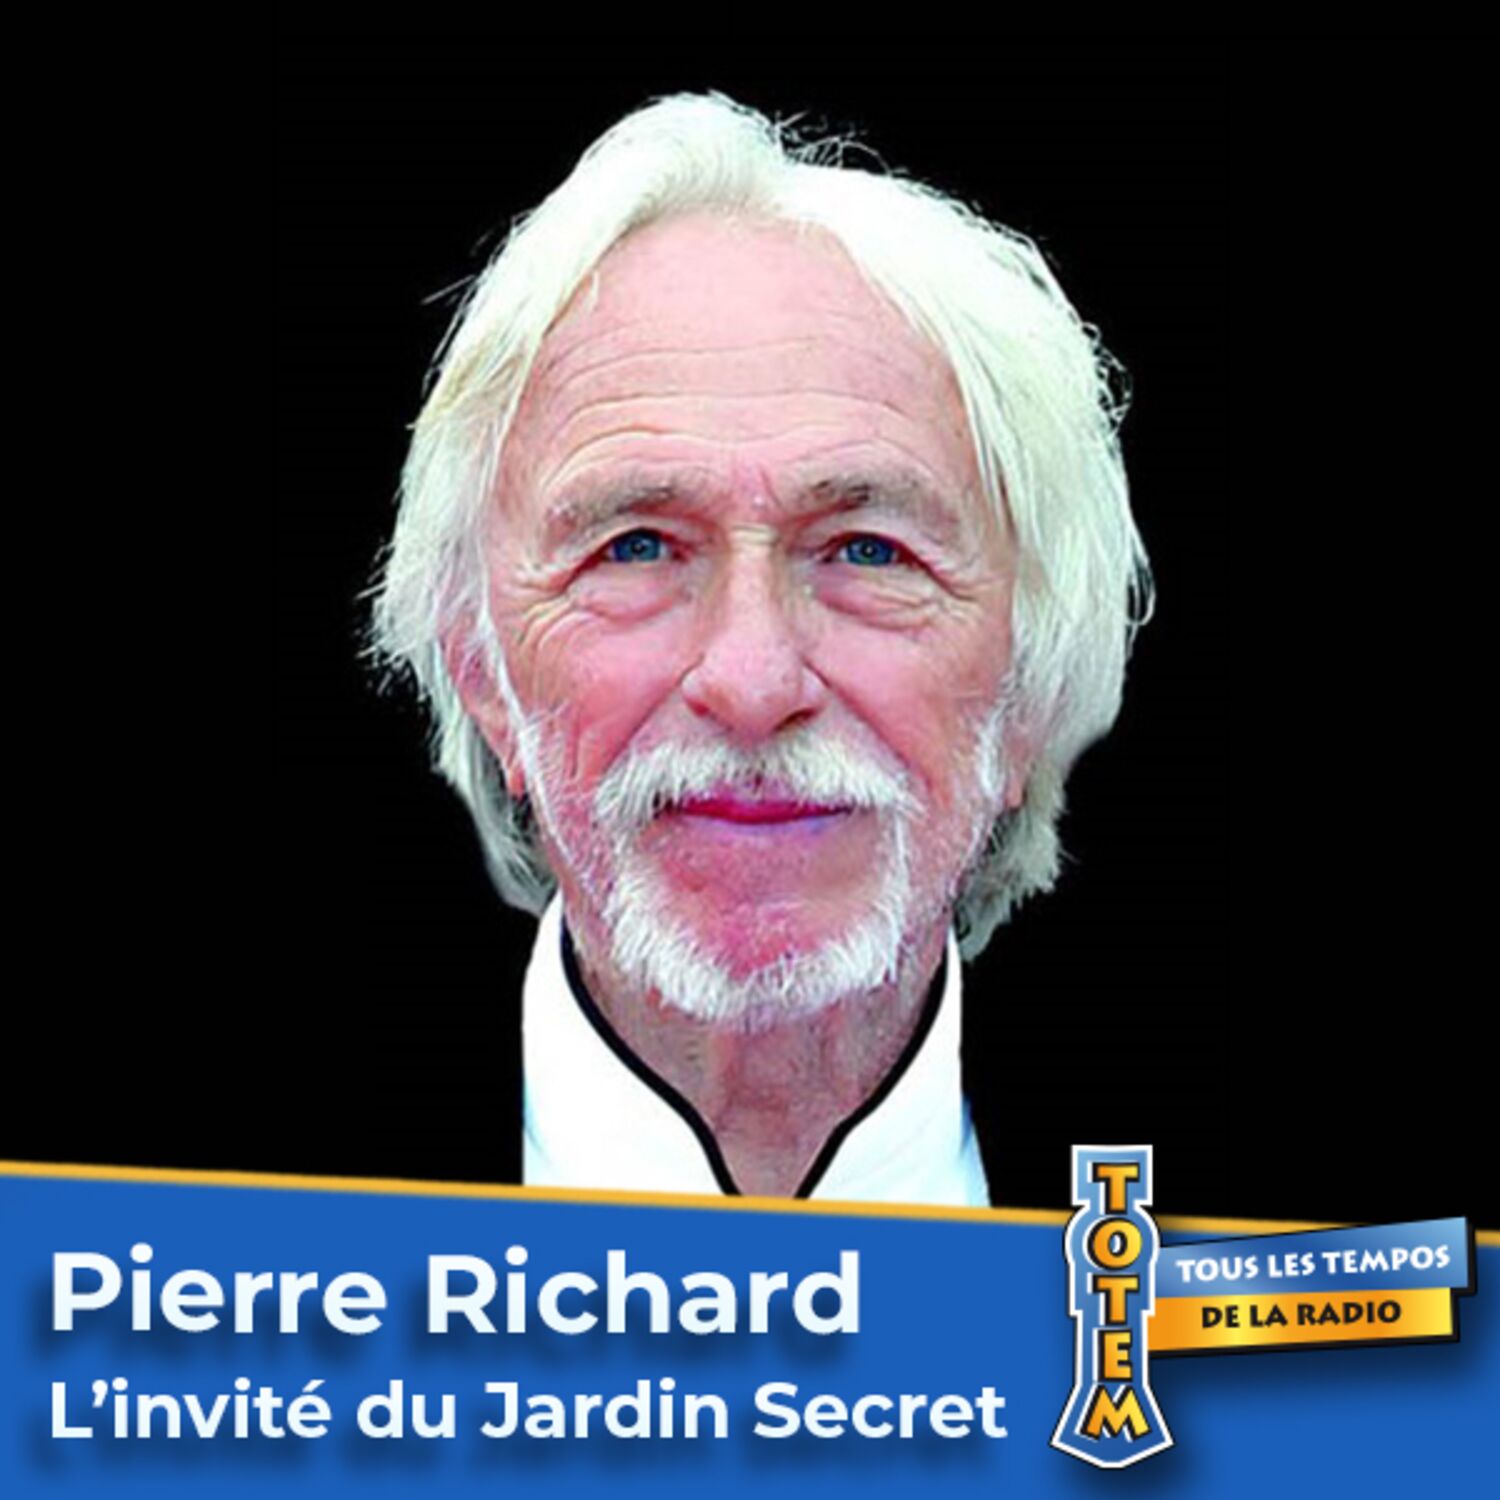 Pierre Richard et ses anecdotes de tournage